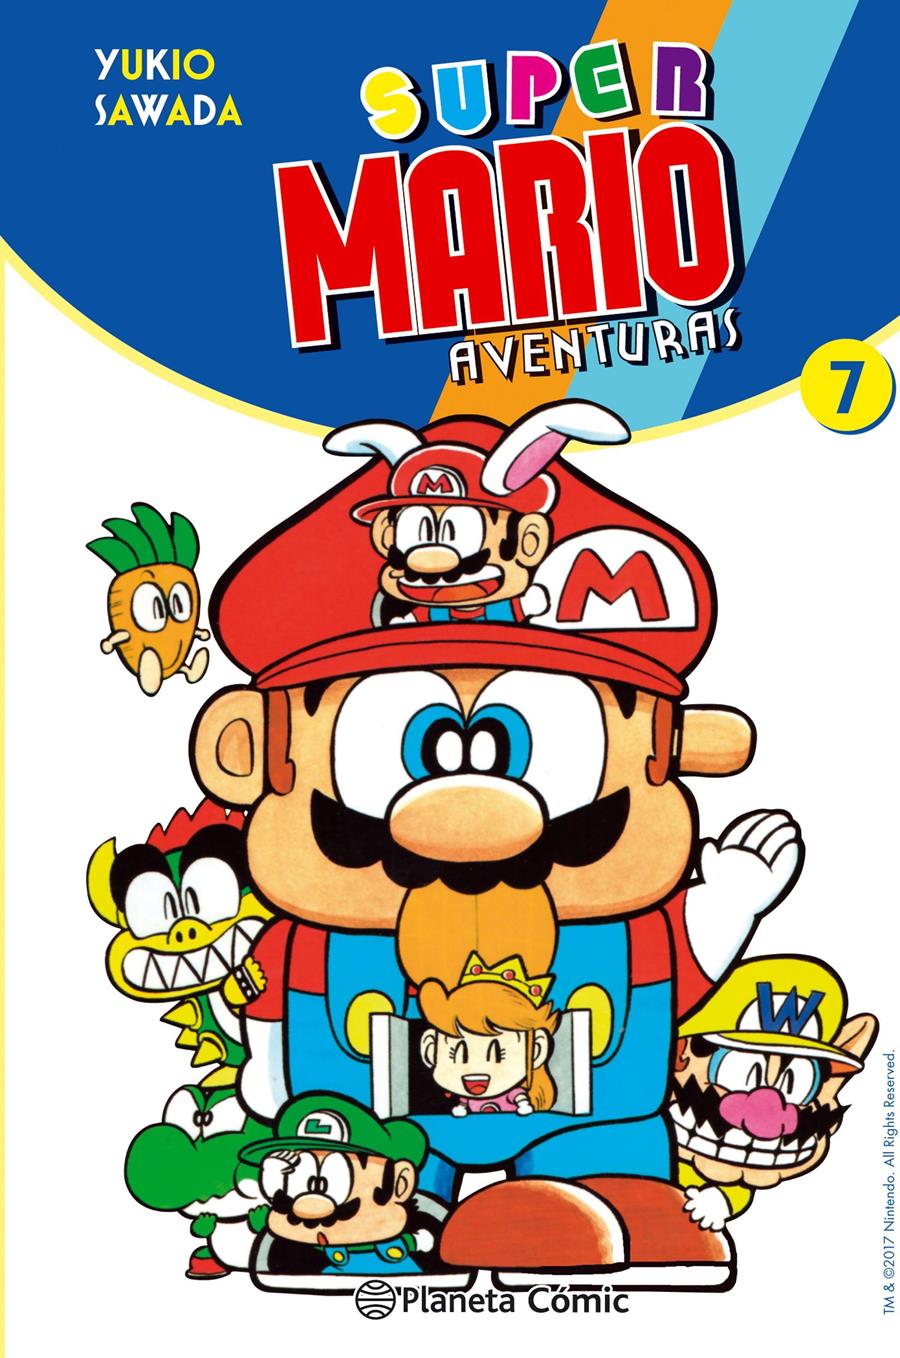 Super Mario nº 07 | N0717-PLA28 | Yukio Sawada | Terra de Còmic - Tu tienda de cómics online especializada en cómics, manga y merchandising